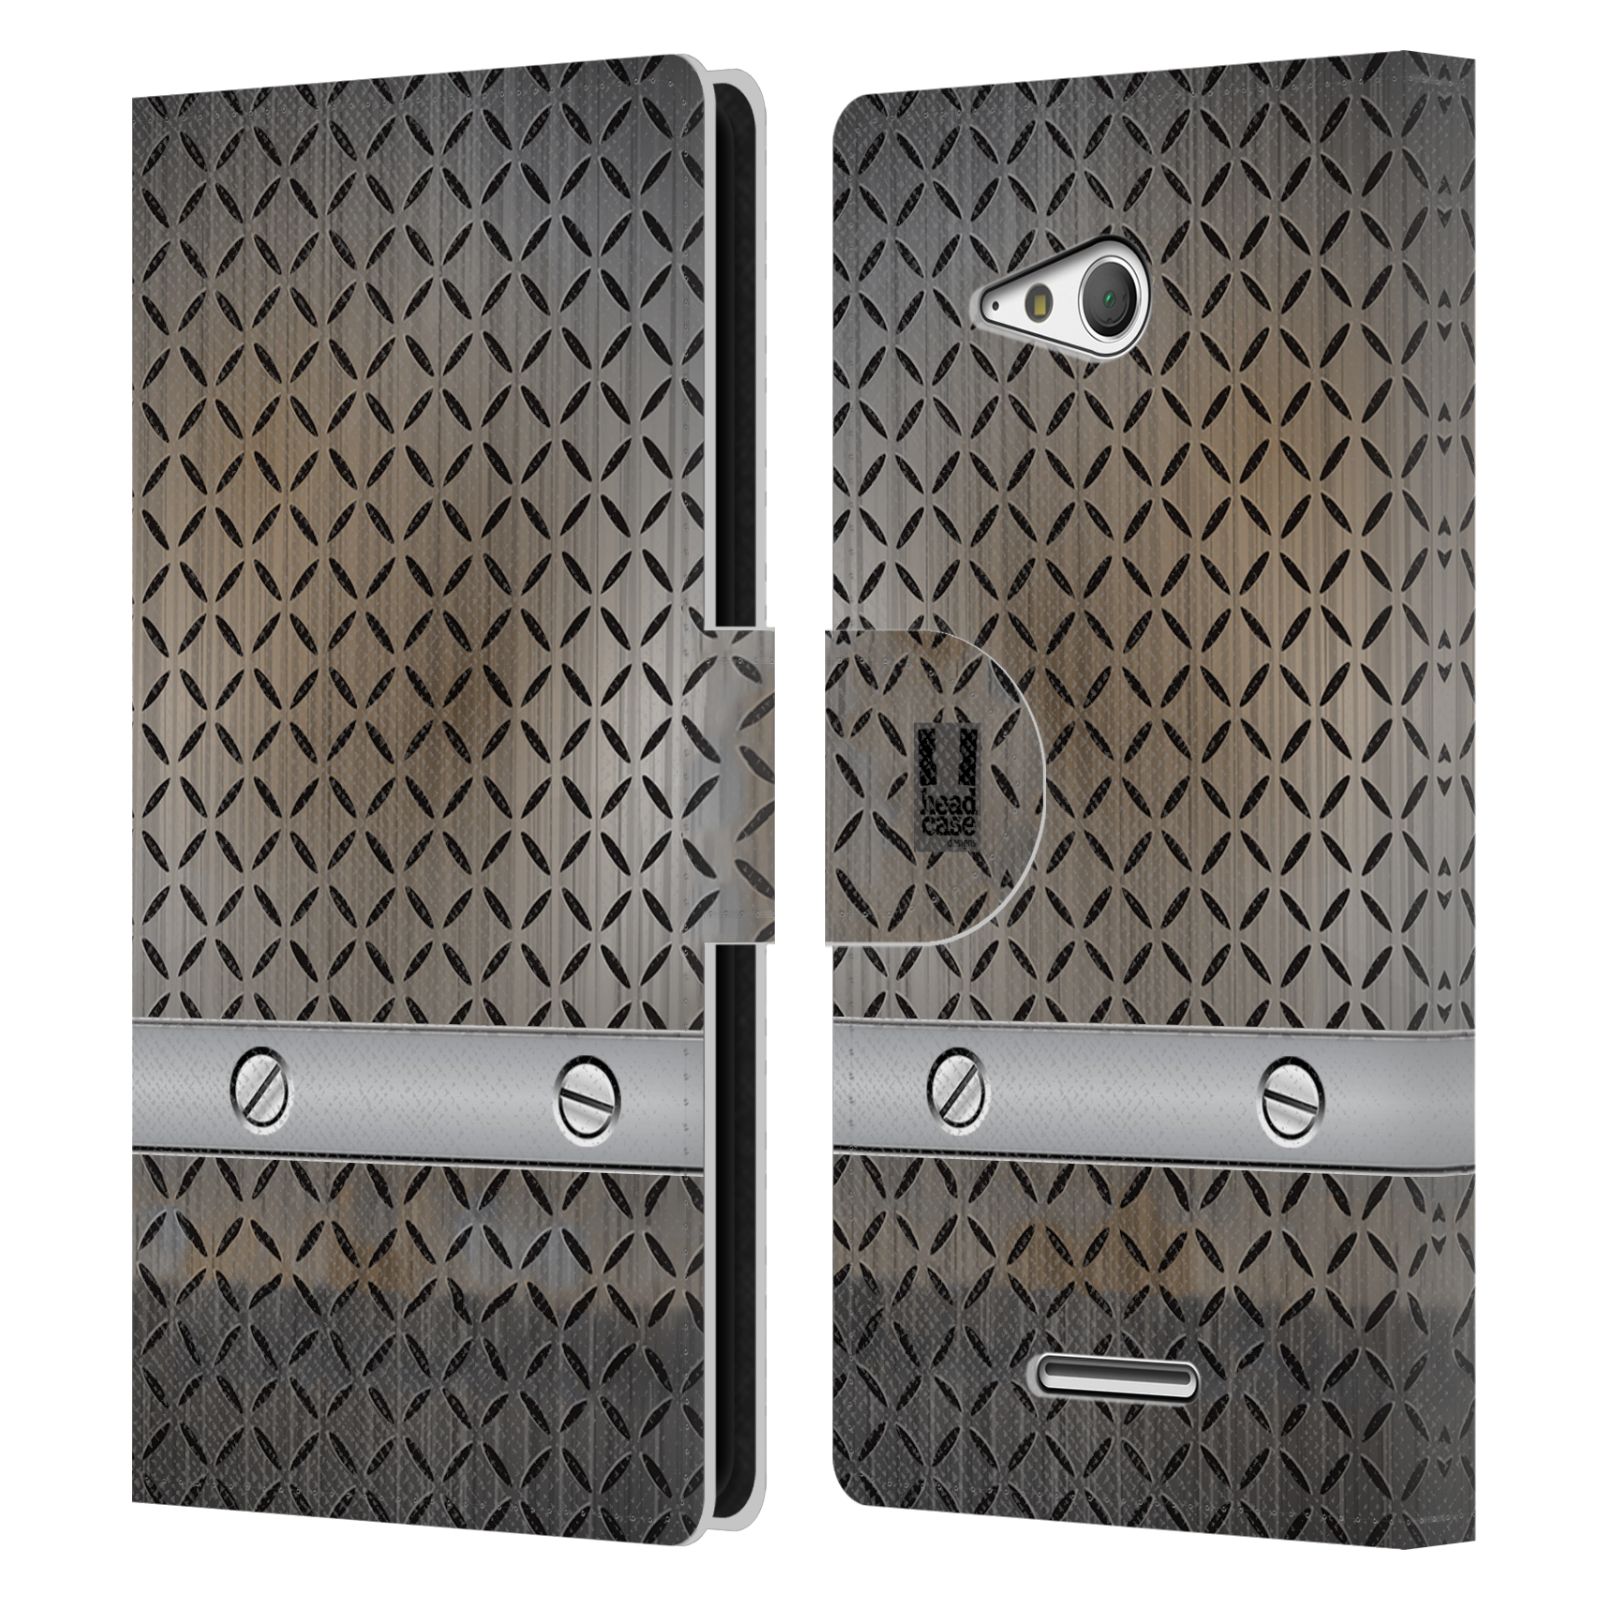 HEAD CASE Flipové pouzdro pro mobil SONY XPERIA E4g stavební textury železo šedá barva